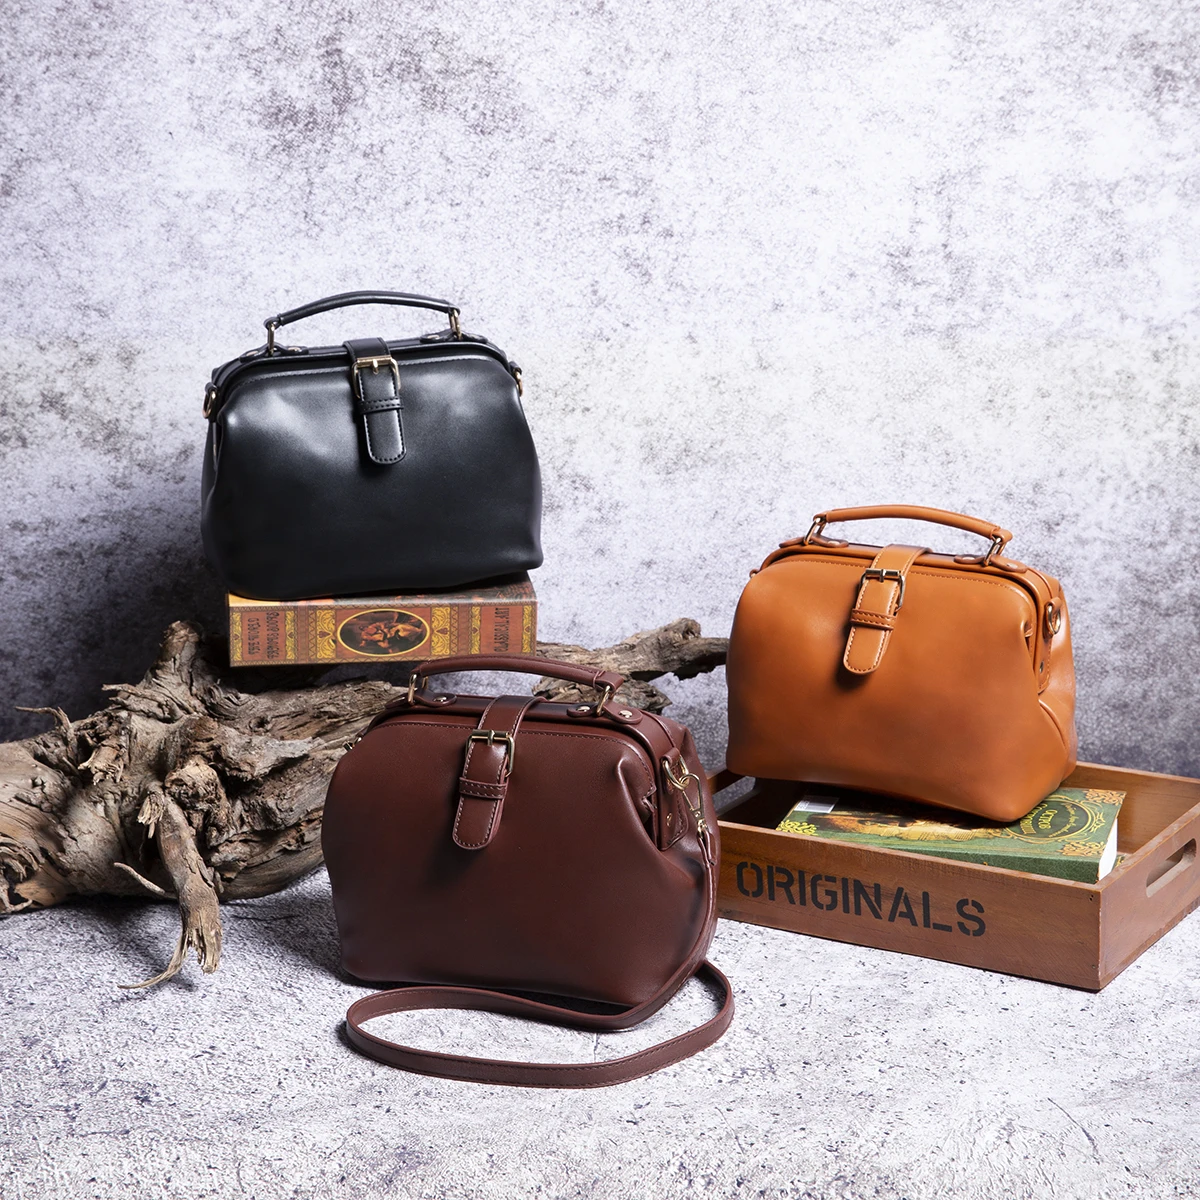 

Hot Sale Vintage Oil wax Leather Doctor Bag Cross bag Shoulder Bag Handbags For Ladies, Black,brown,chestnut